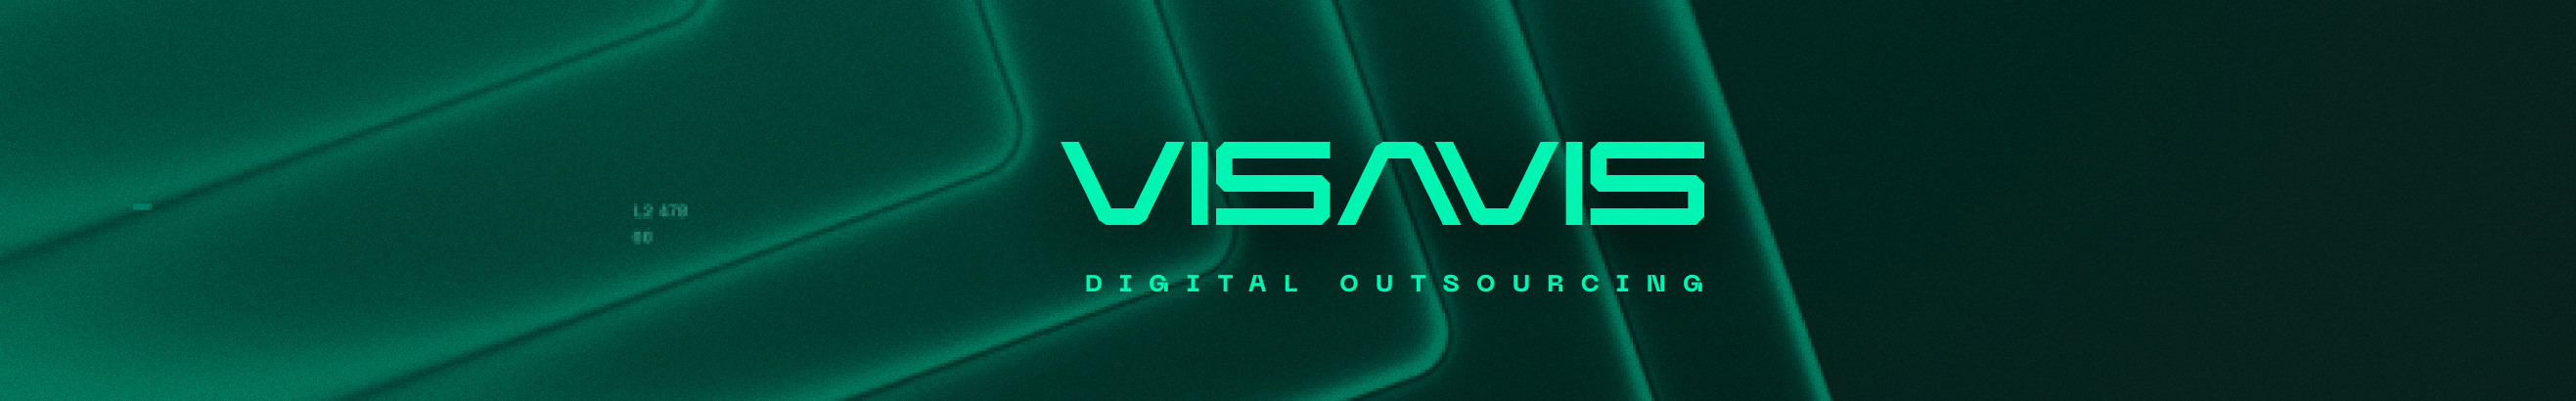 VIS-A-VIS dgtl outsourcing's profile banner